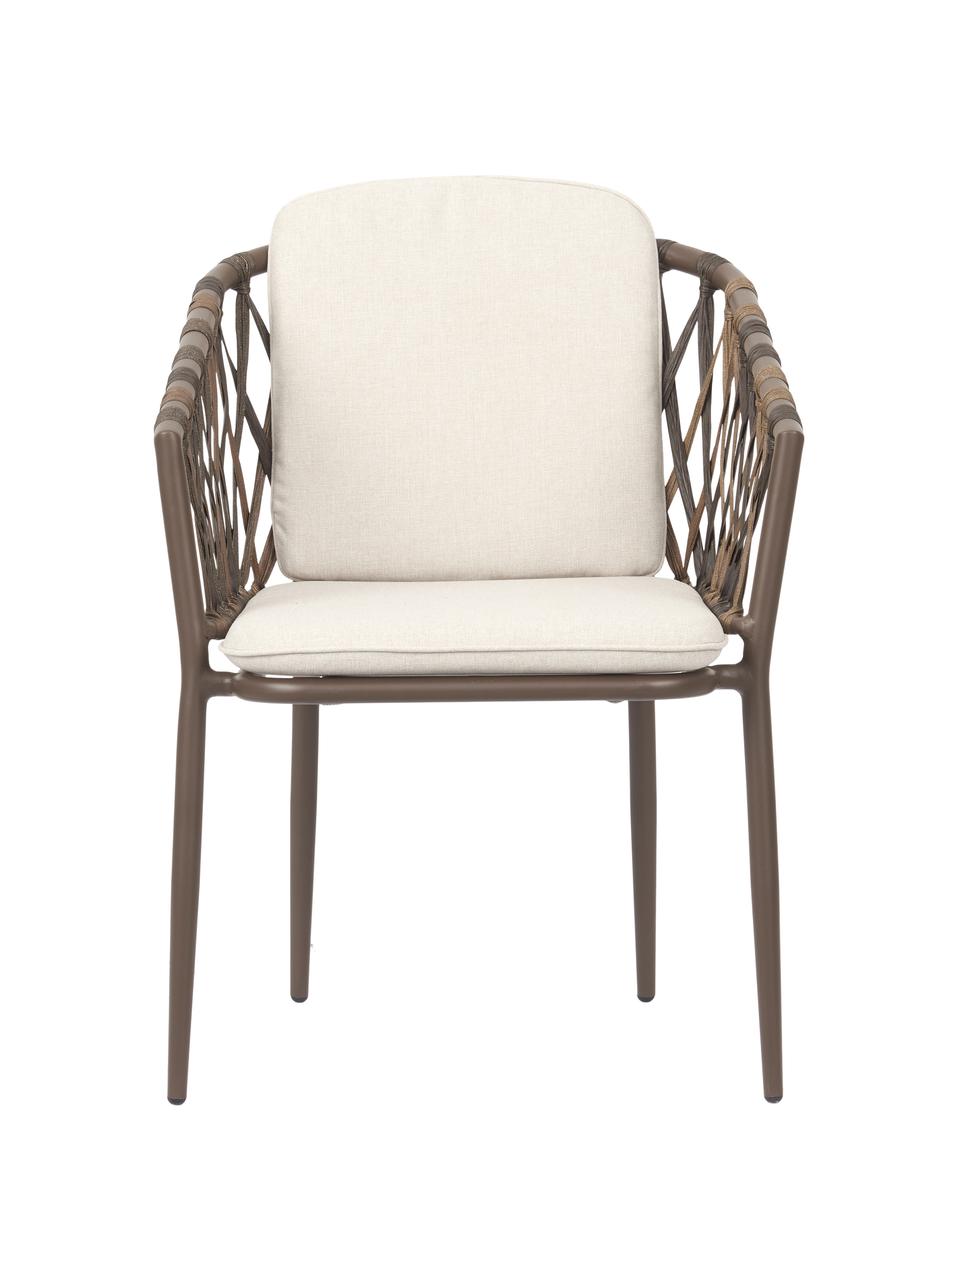 Krzesło ogrodowe z podłokietnikami Hila, Tapicerka: 100% poliester, Korpus: rattan, Kremowobiała tkanina, rattan, S 61 x G 65 cm